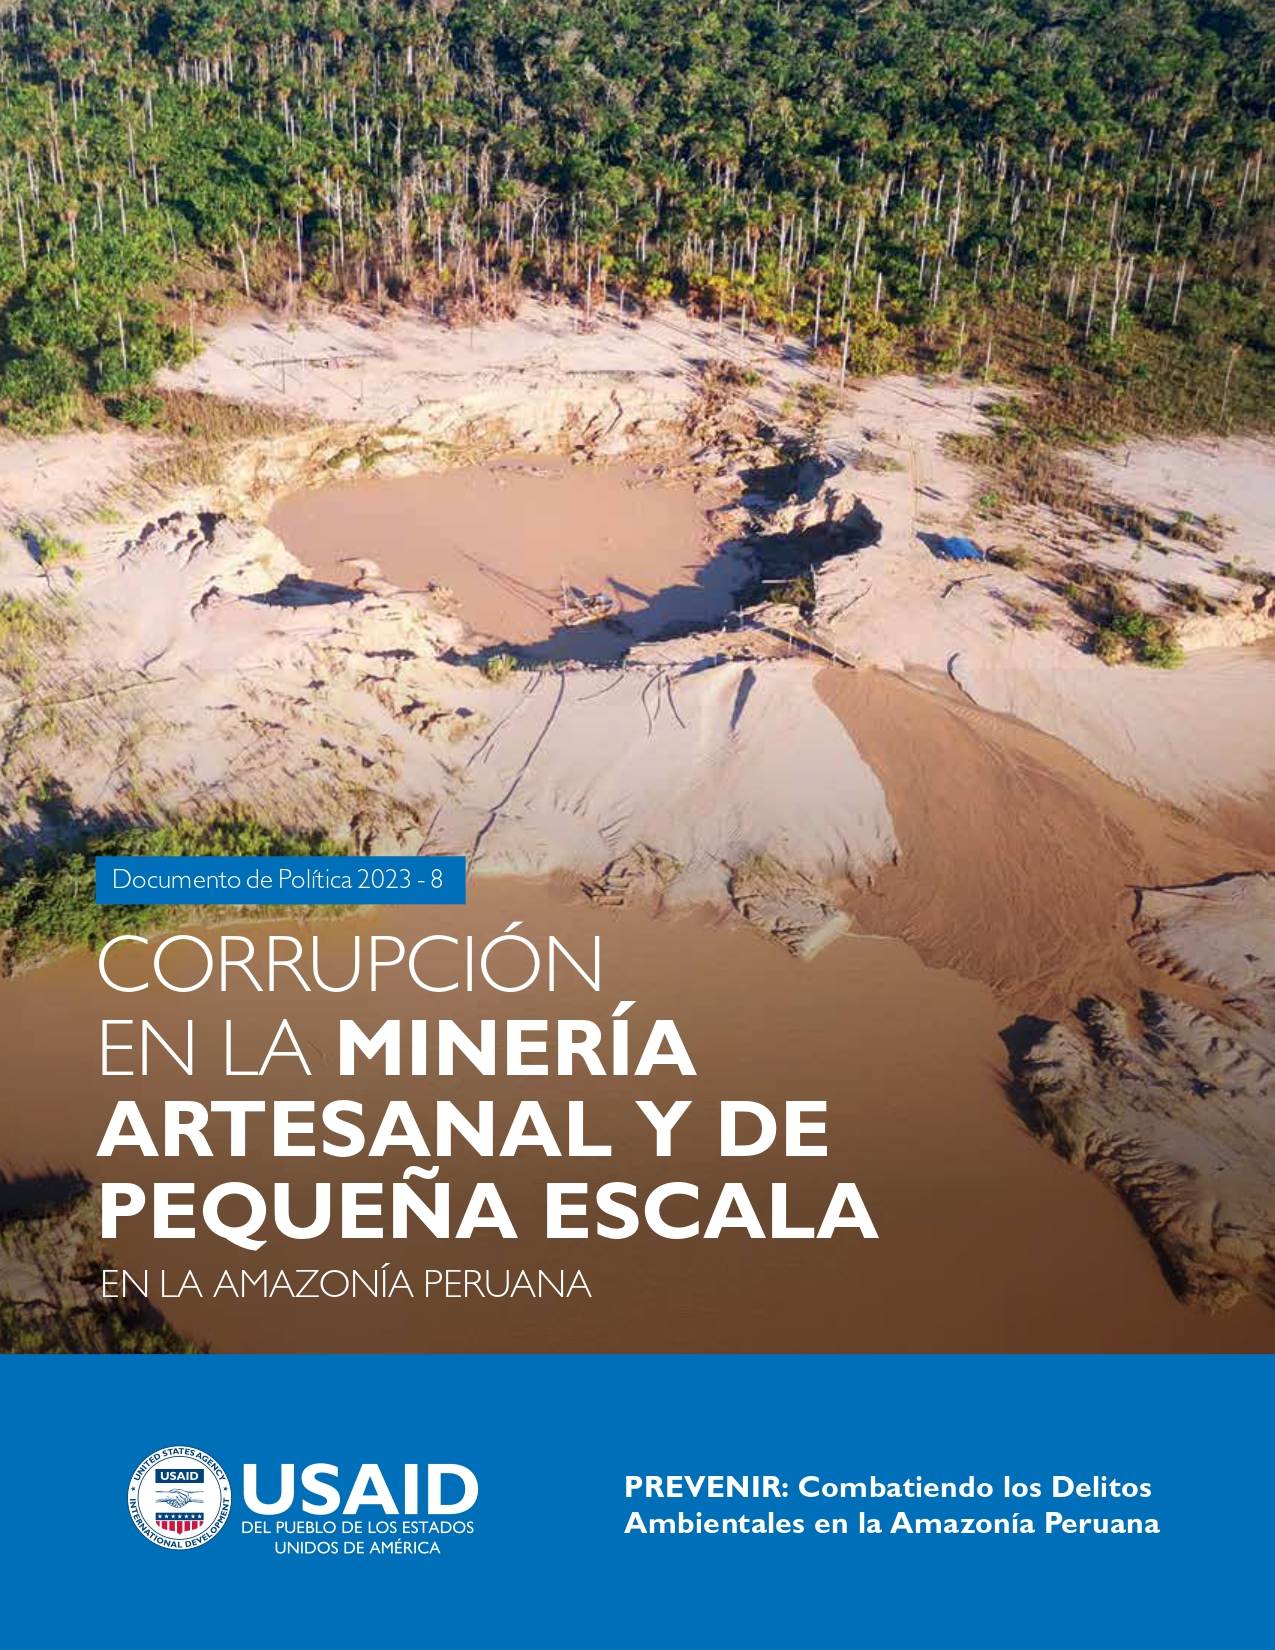 Corrupción en la Minería artesanal y de pequeña escala en la Amazonía peruana